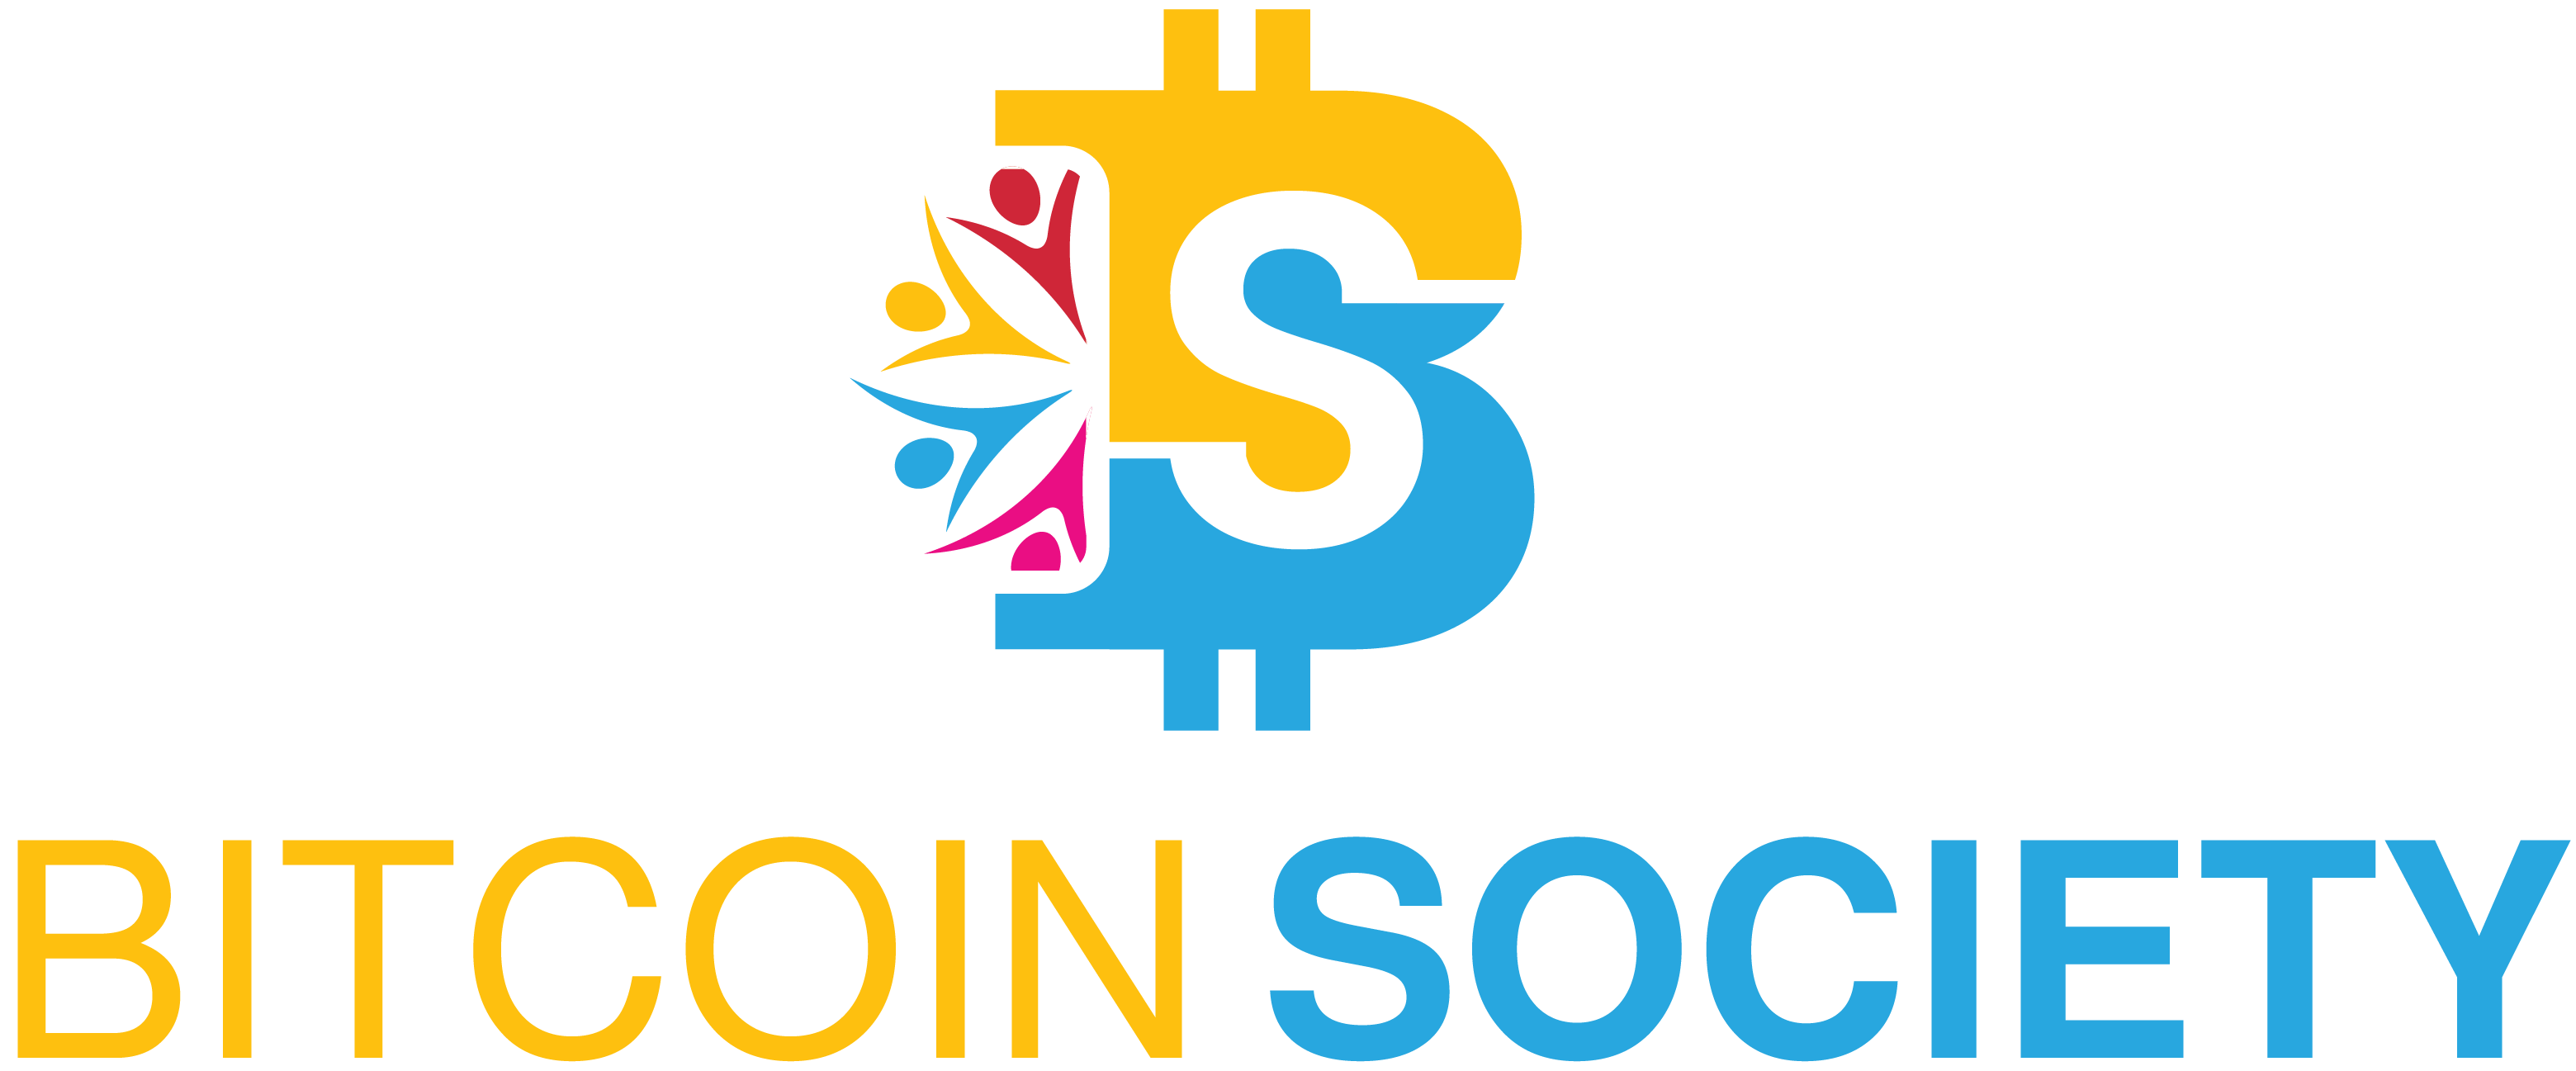 Bitcoin Society - REGISZTRÁLJ MOST INGYENESEN